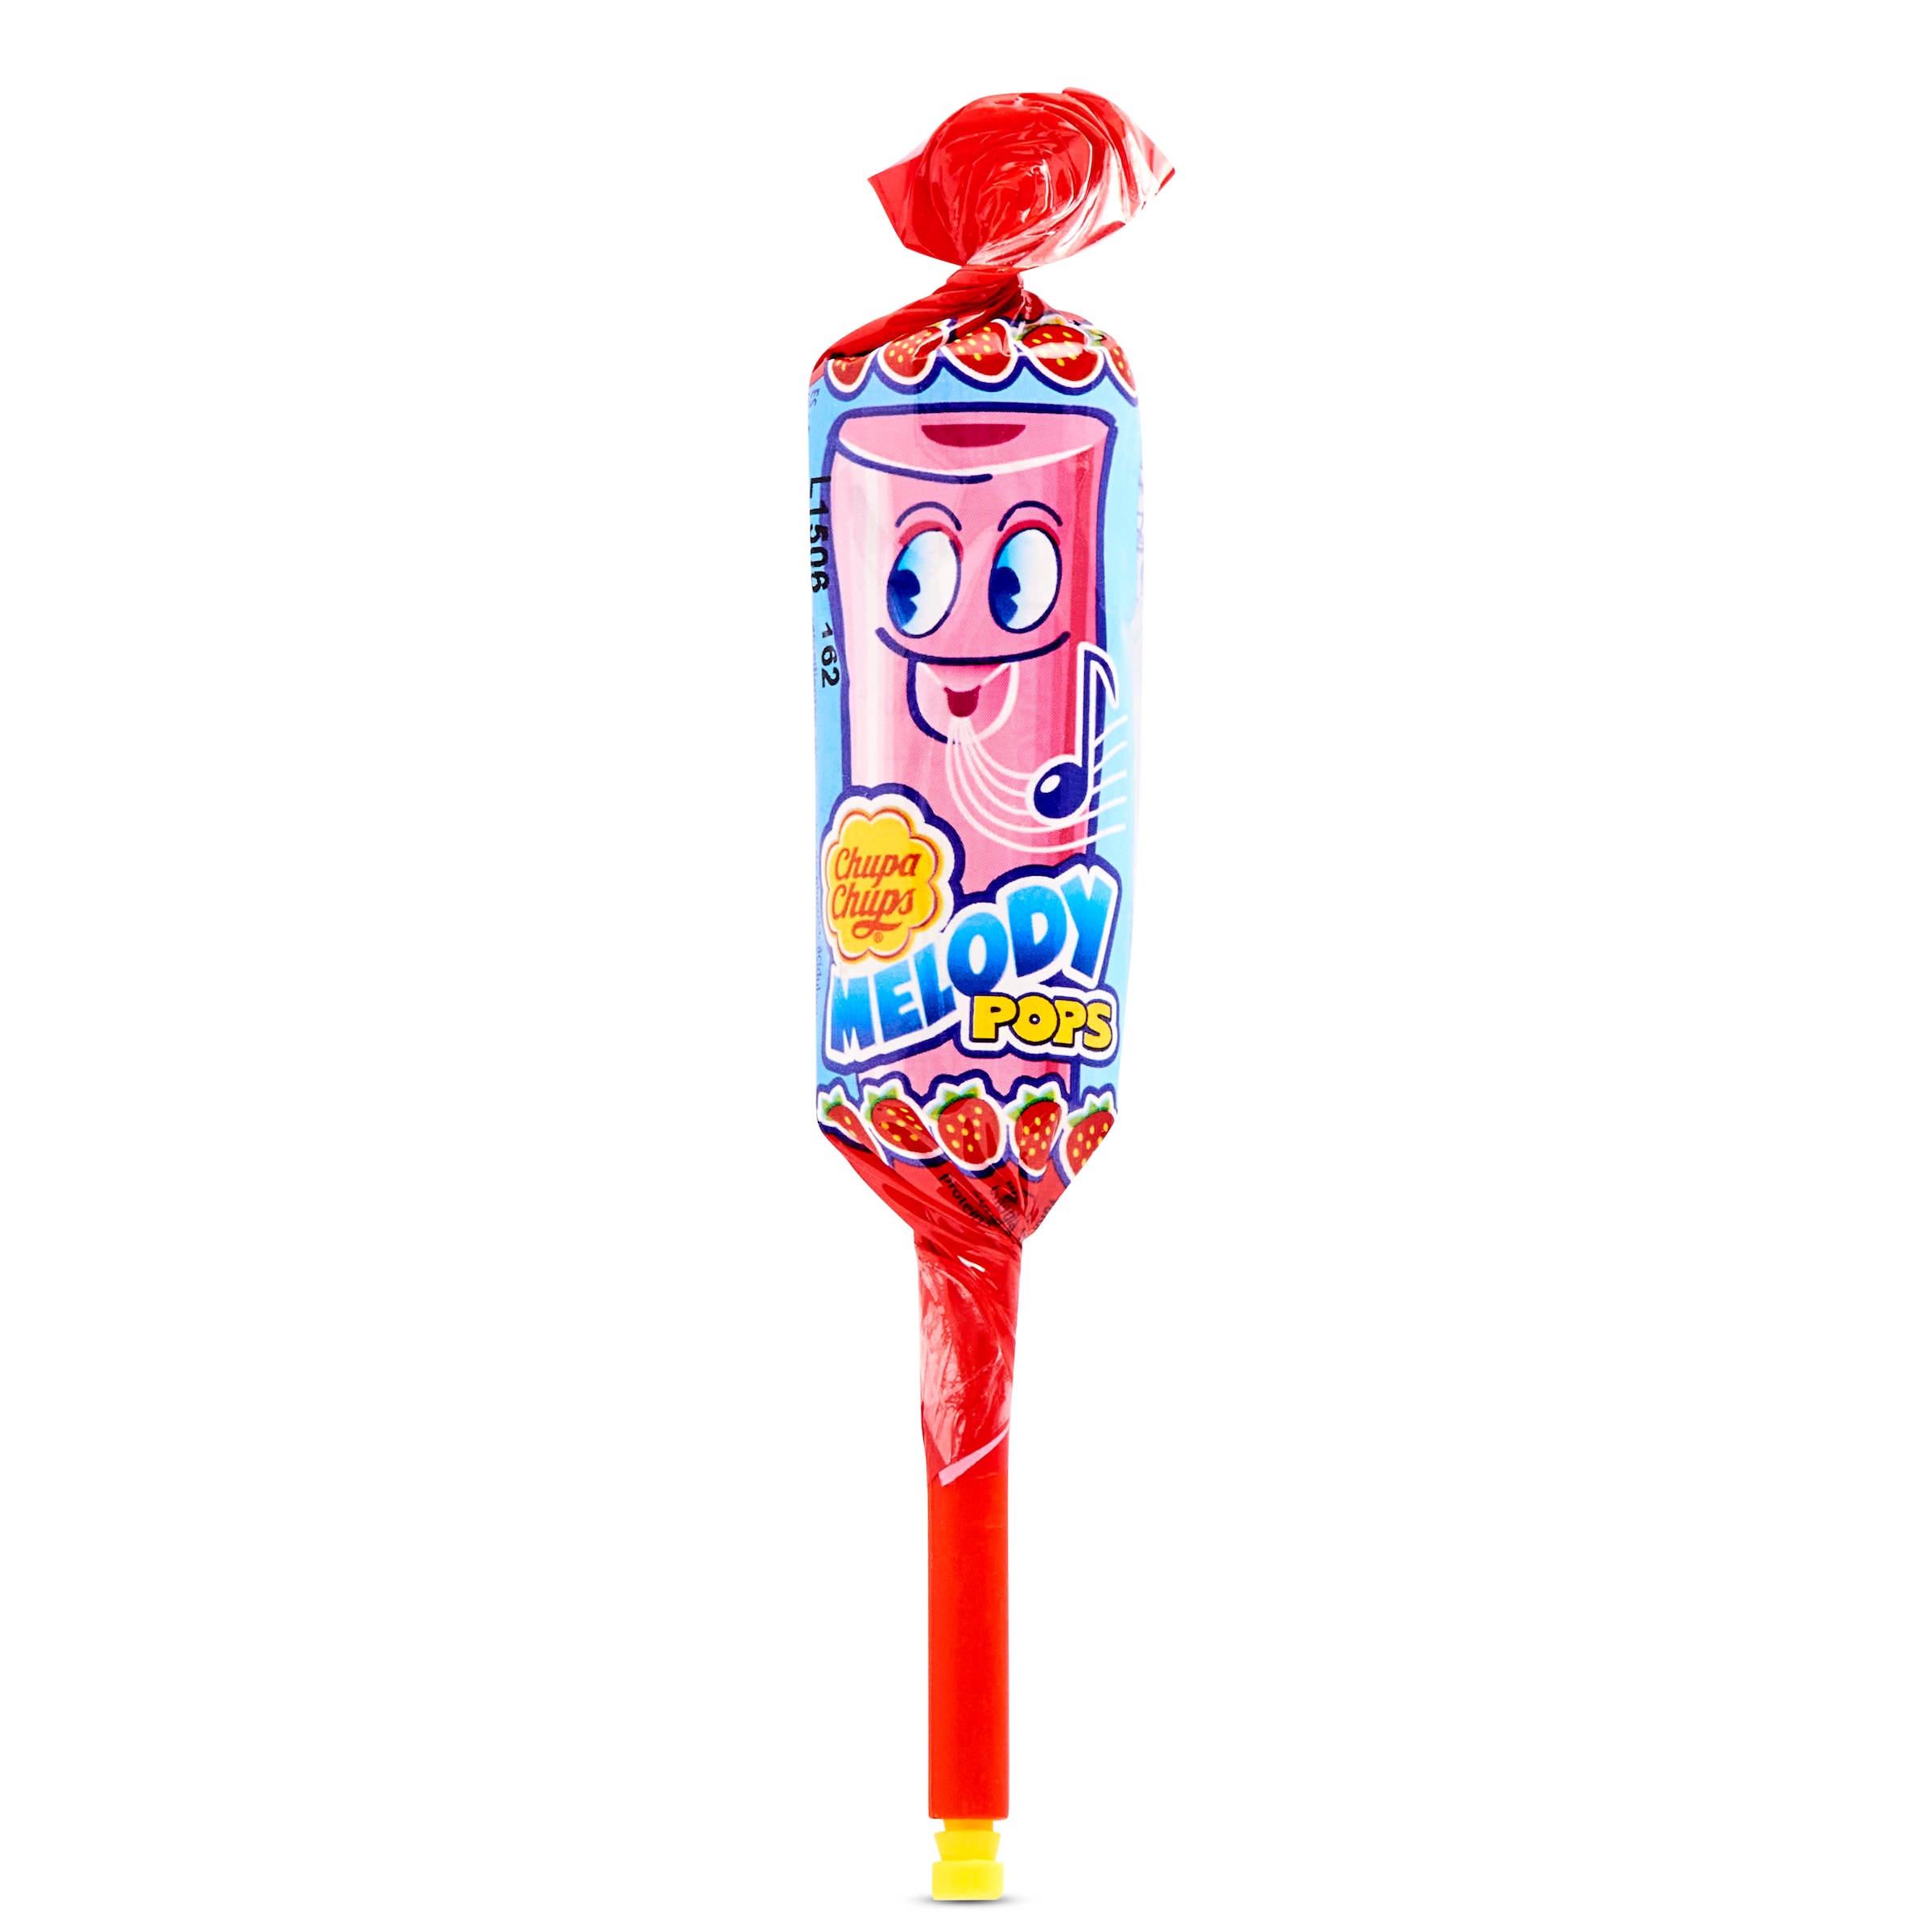 Caramelo con palo de fresa melody pops Chupa Chups 1 unidad - Supermercados  DIA